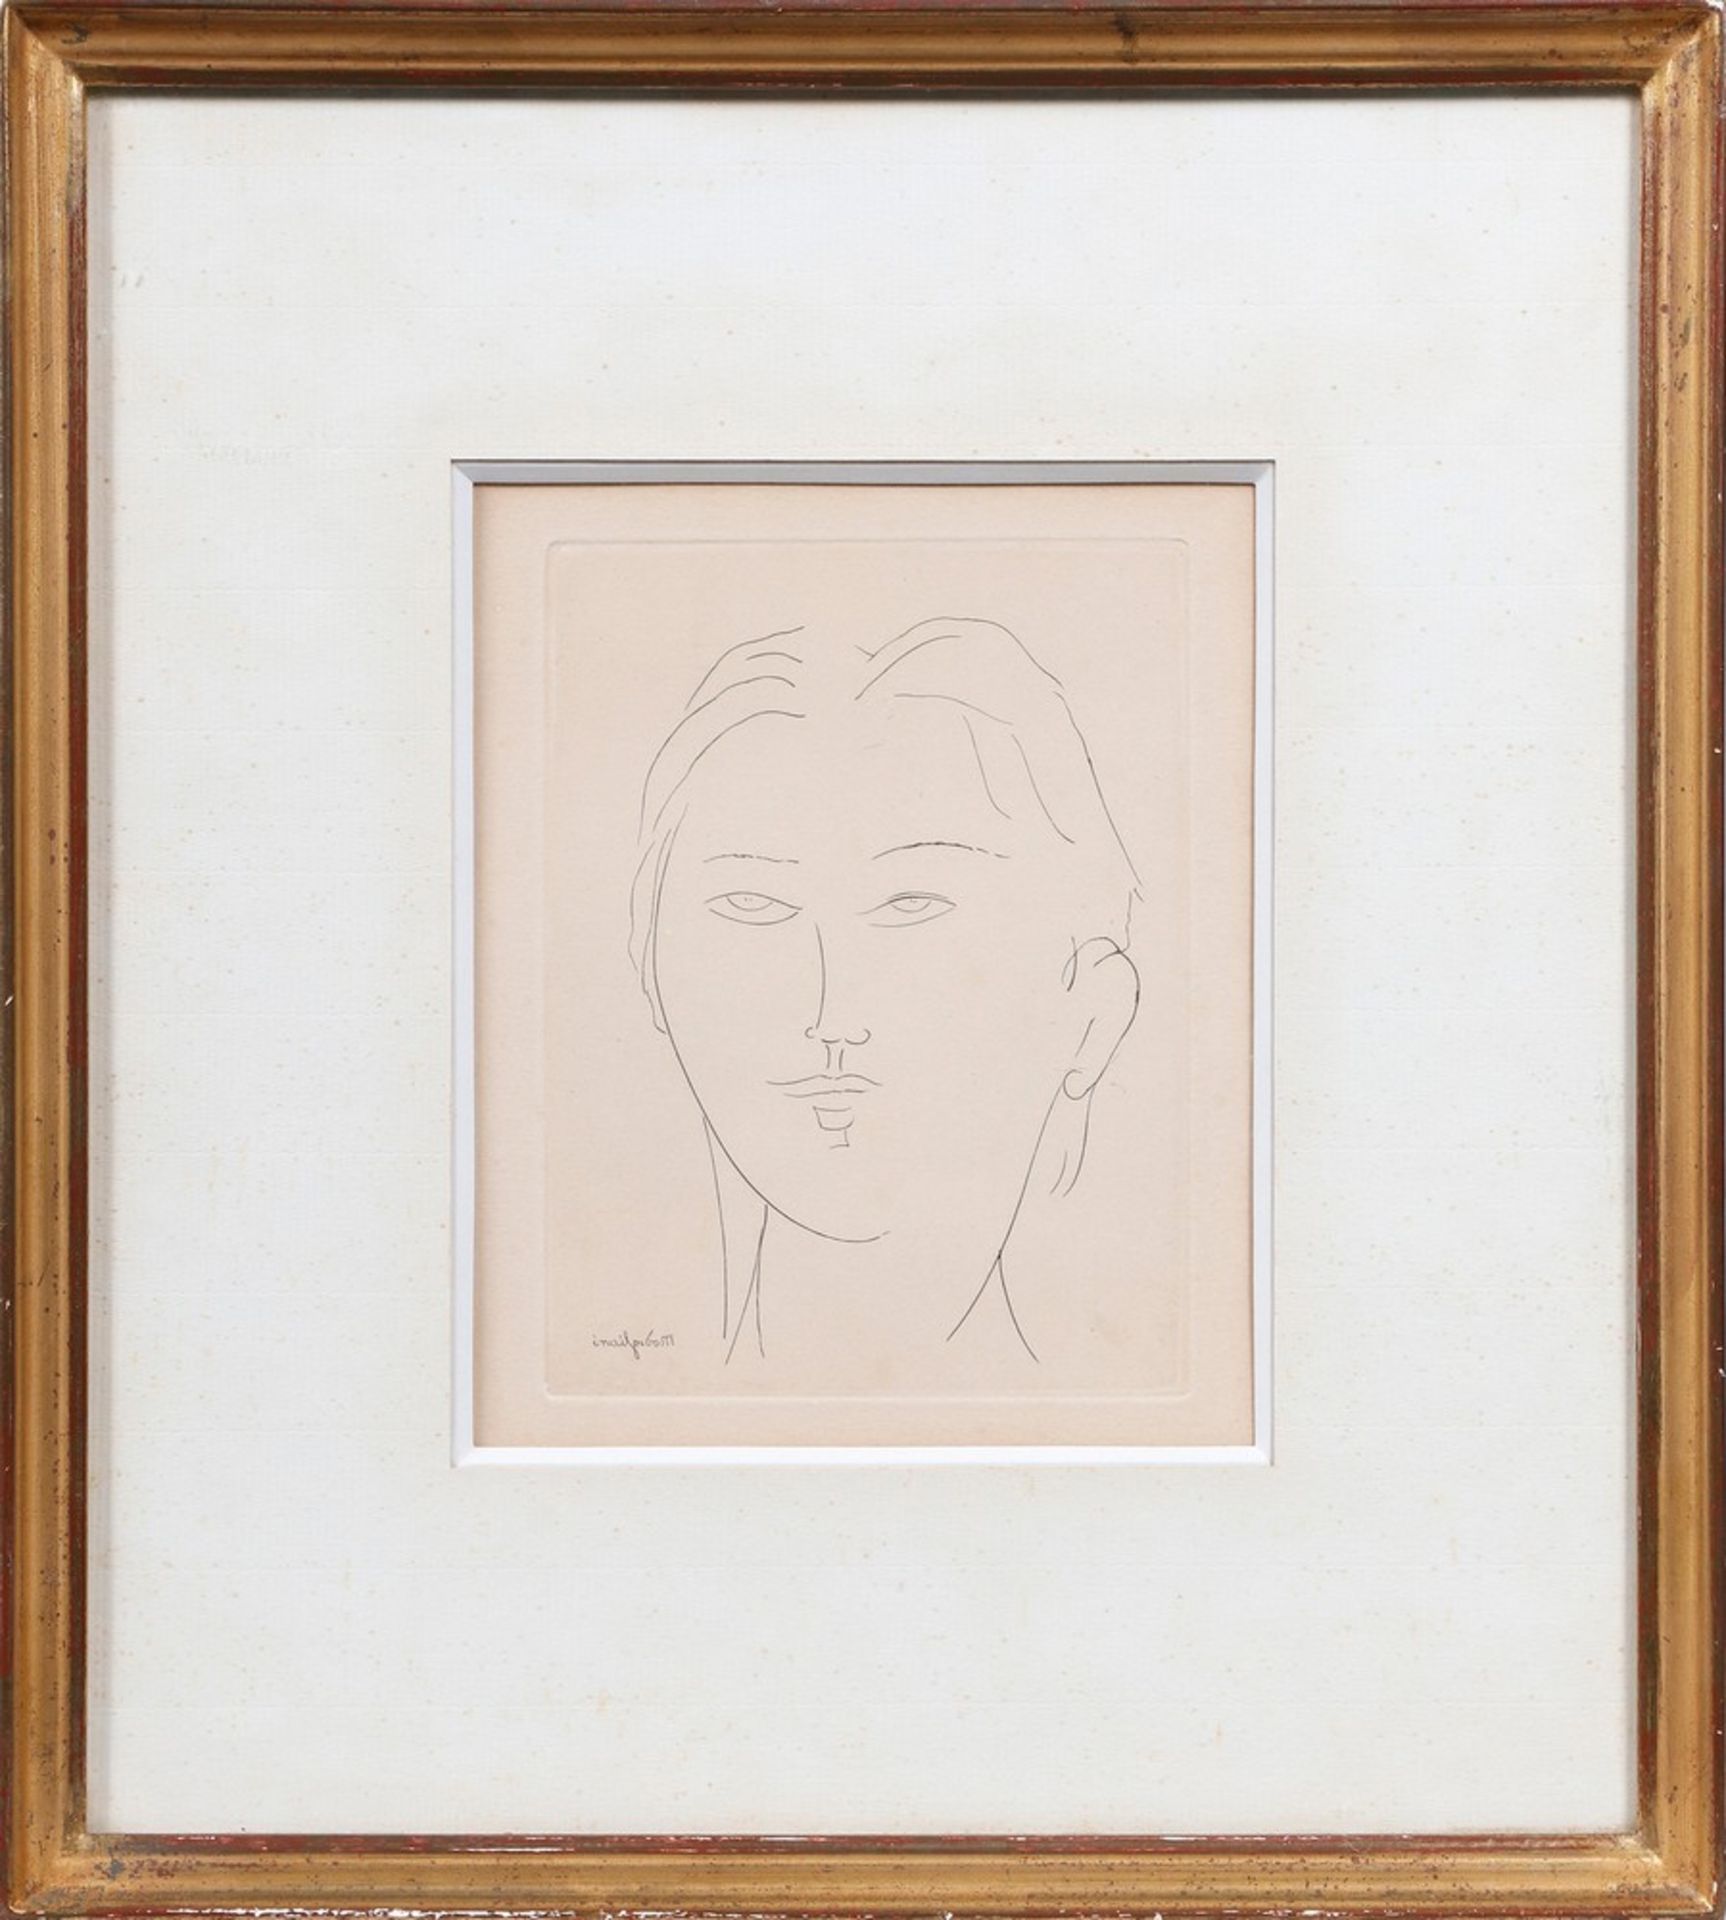 Amedeo Clemente Modigliani (1884, Livorno - 1920, Paris)